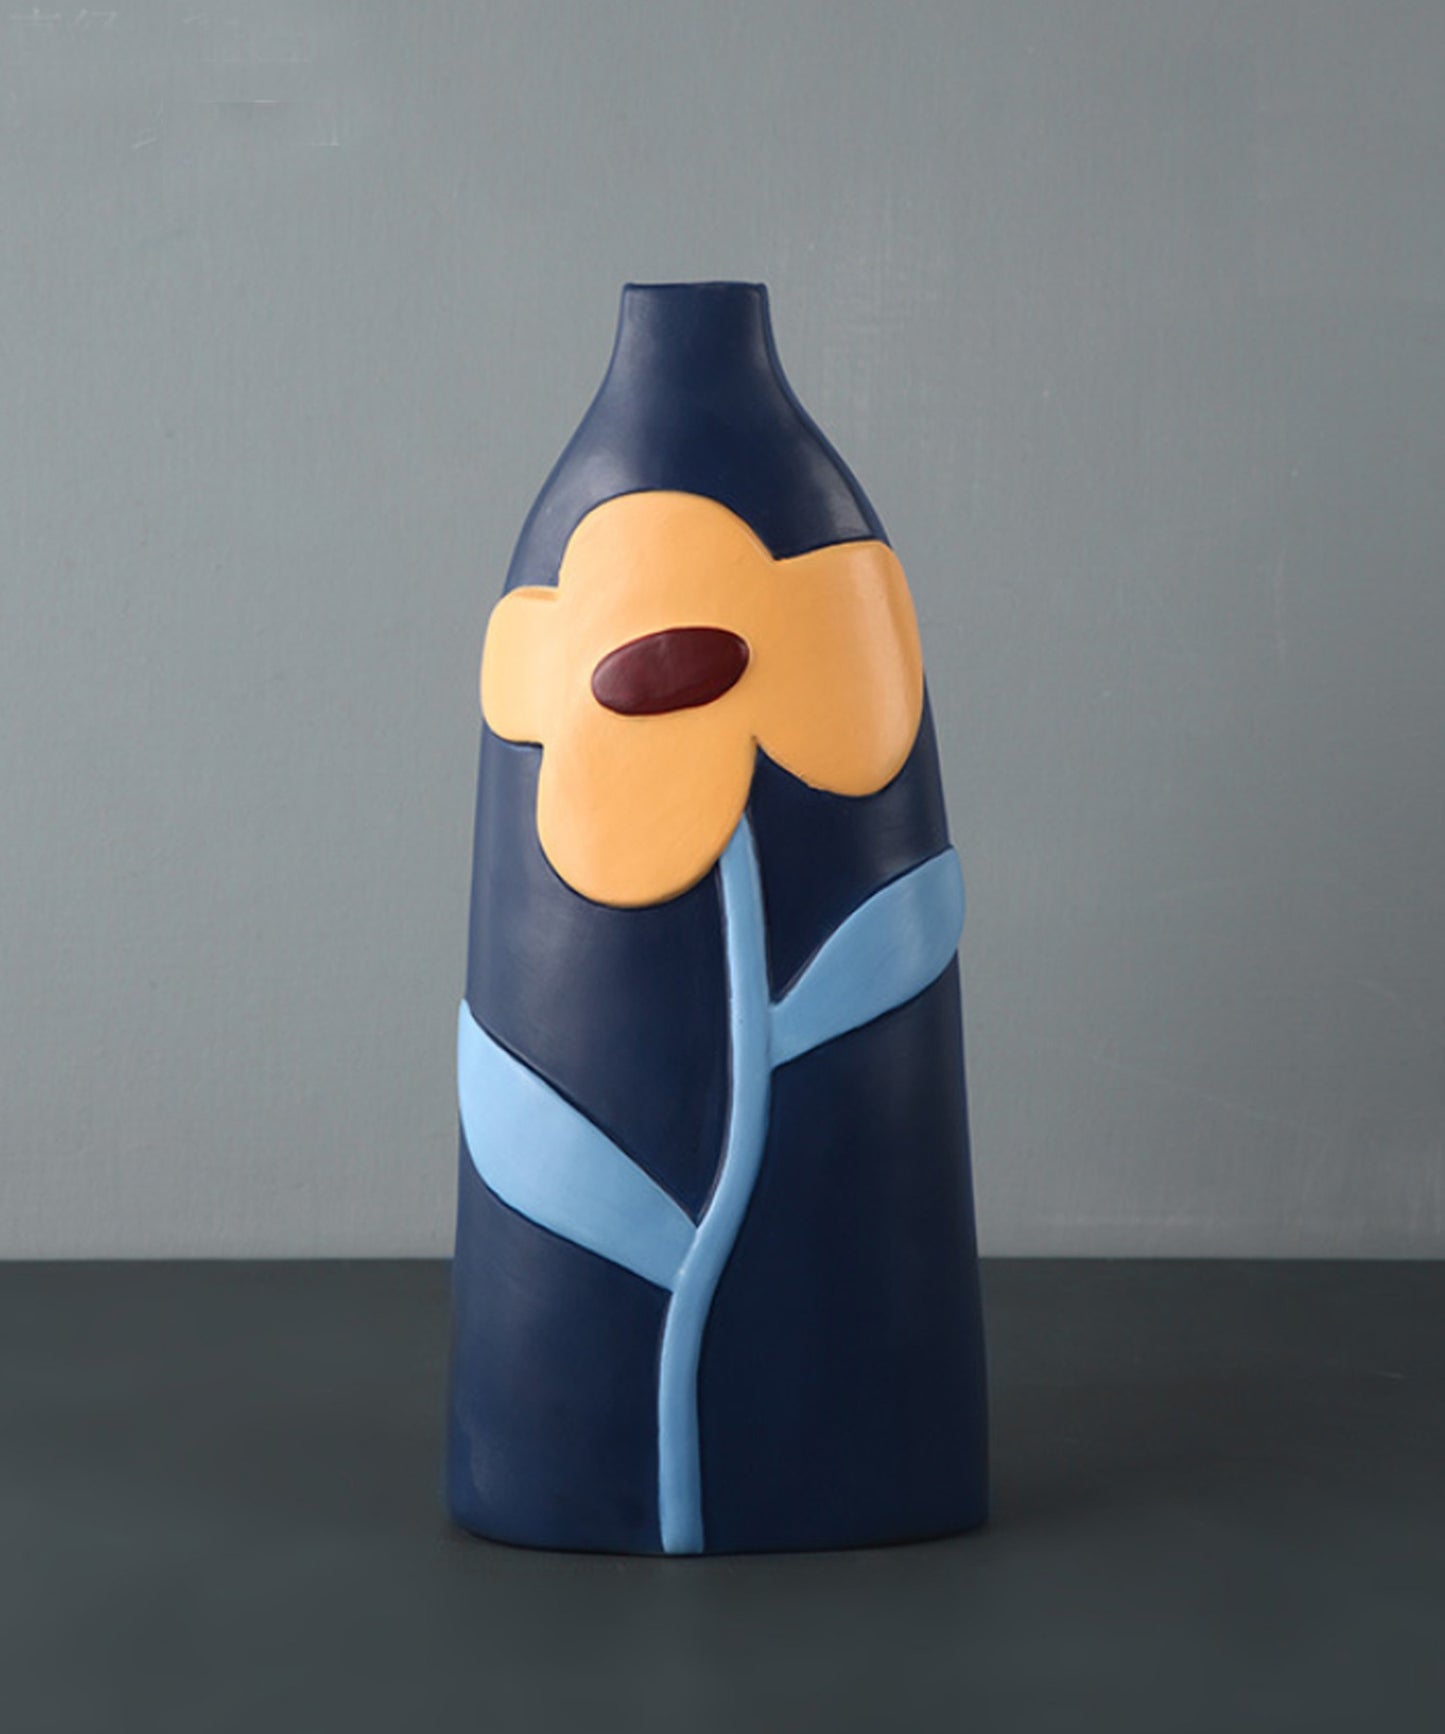 カラフルなお花の陶器花瓶